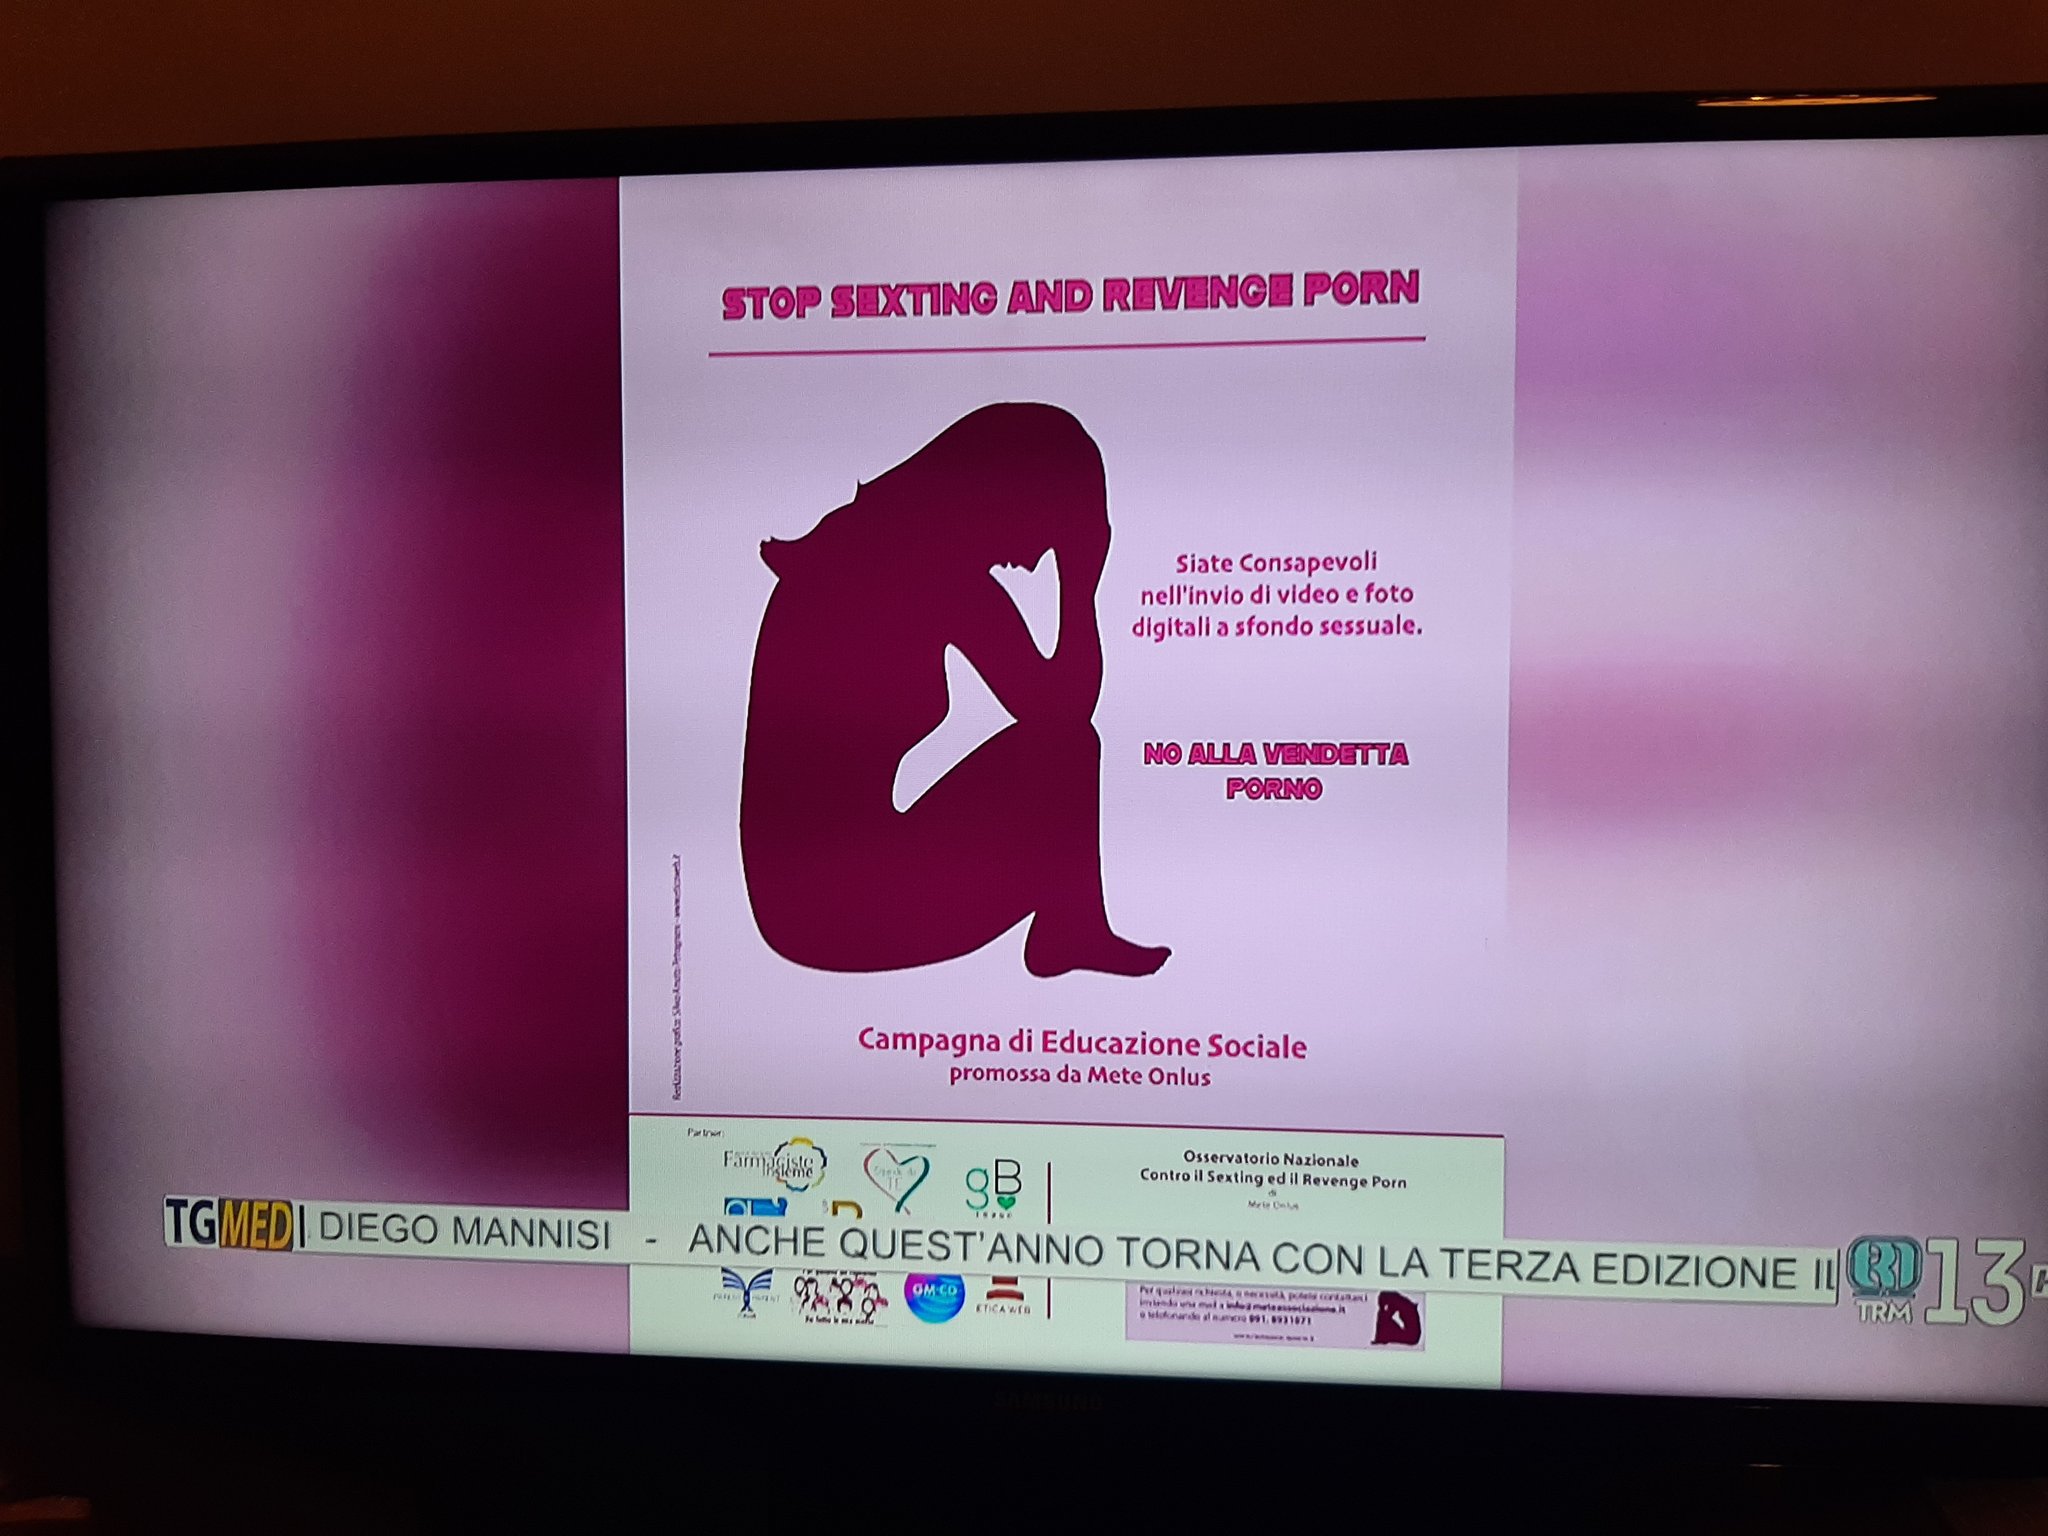 Grazie ad UtiFarma, il Poster “Stop Sexting and Revenge Porn” Arriva nelle Farmacie MeteOnlus foto